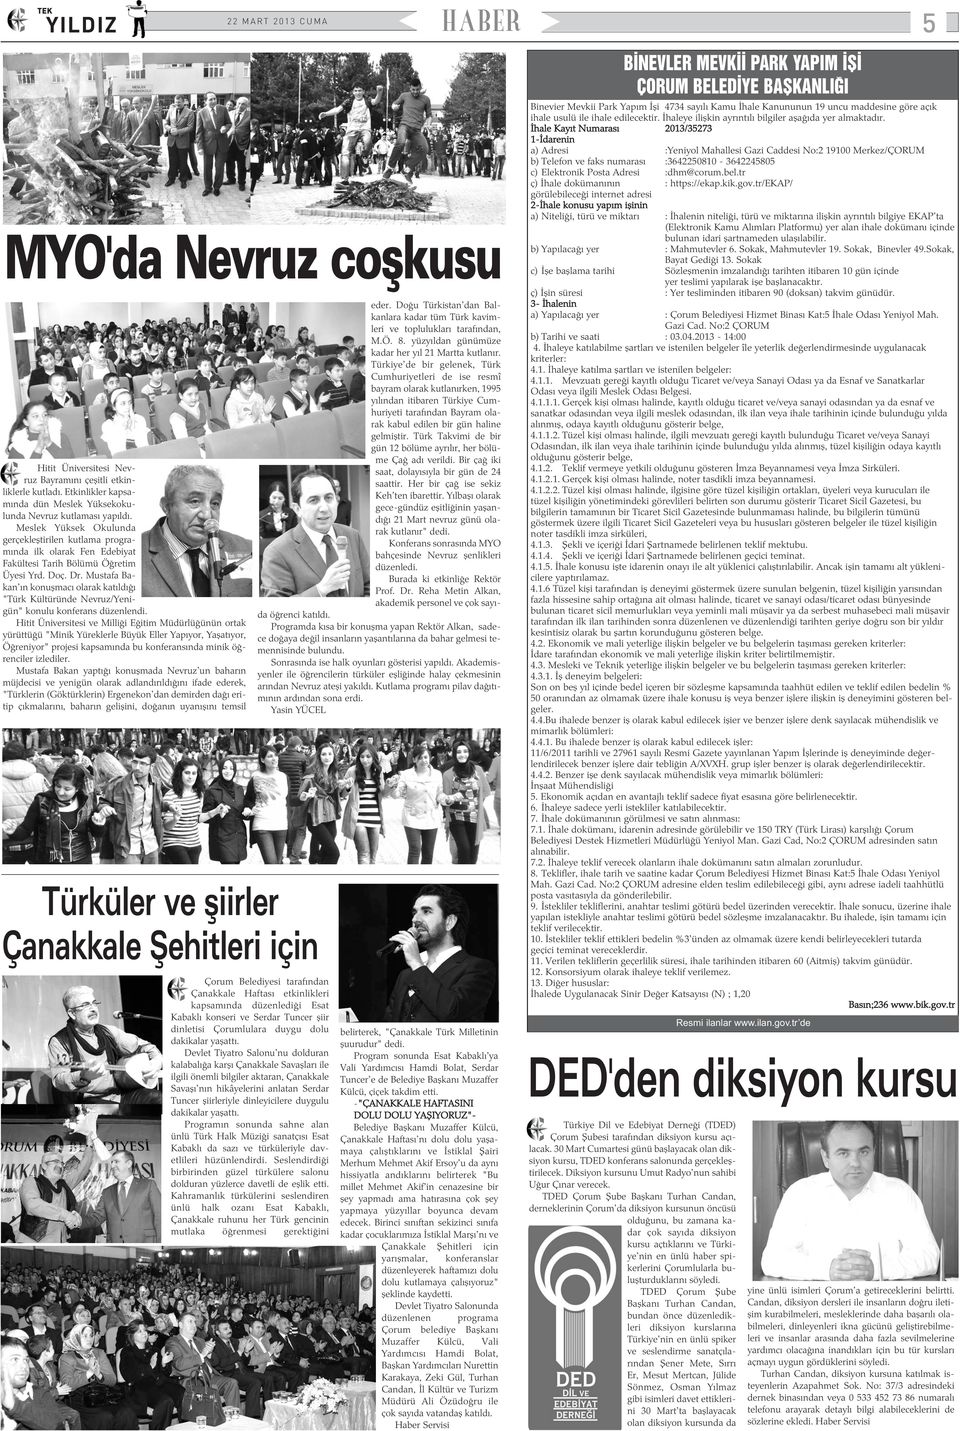 Mustafa Bakan'ýn konuþmacý olarak katýldýðý "Türk Kültüründe Nevruz/Yenigün" konulu konferans düzenlendi.